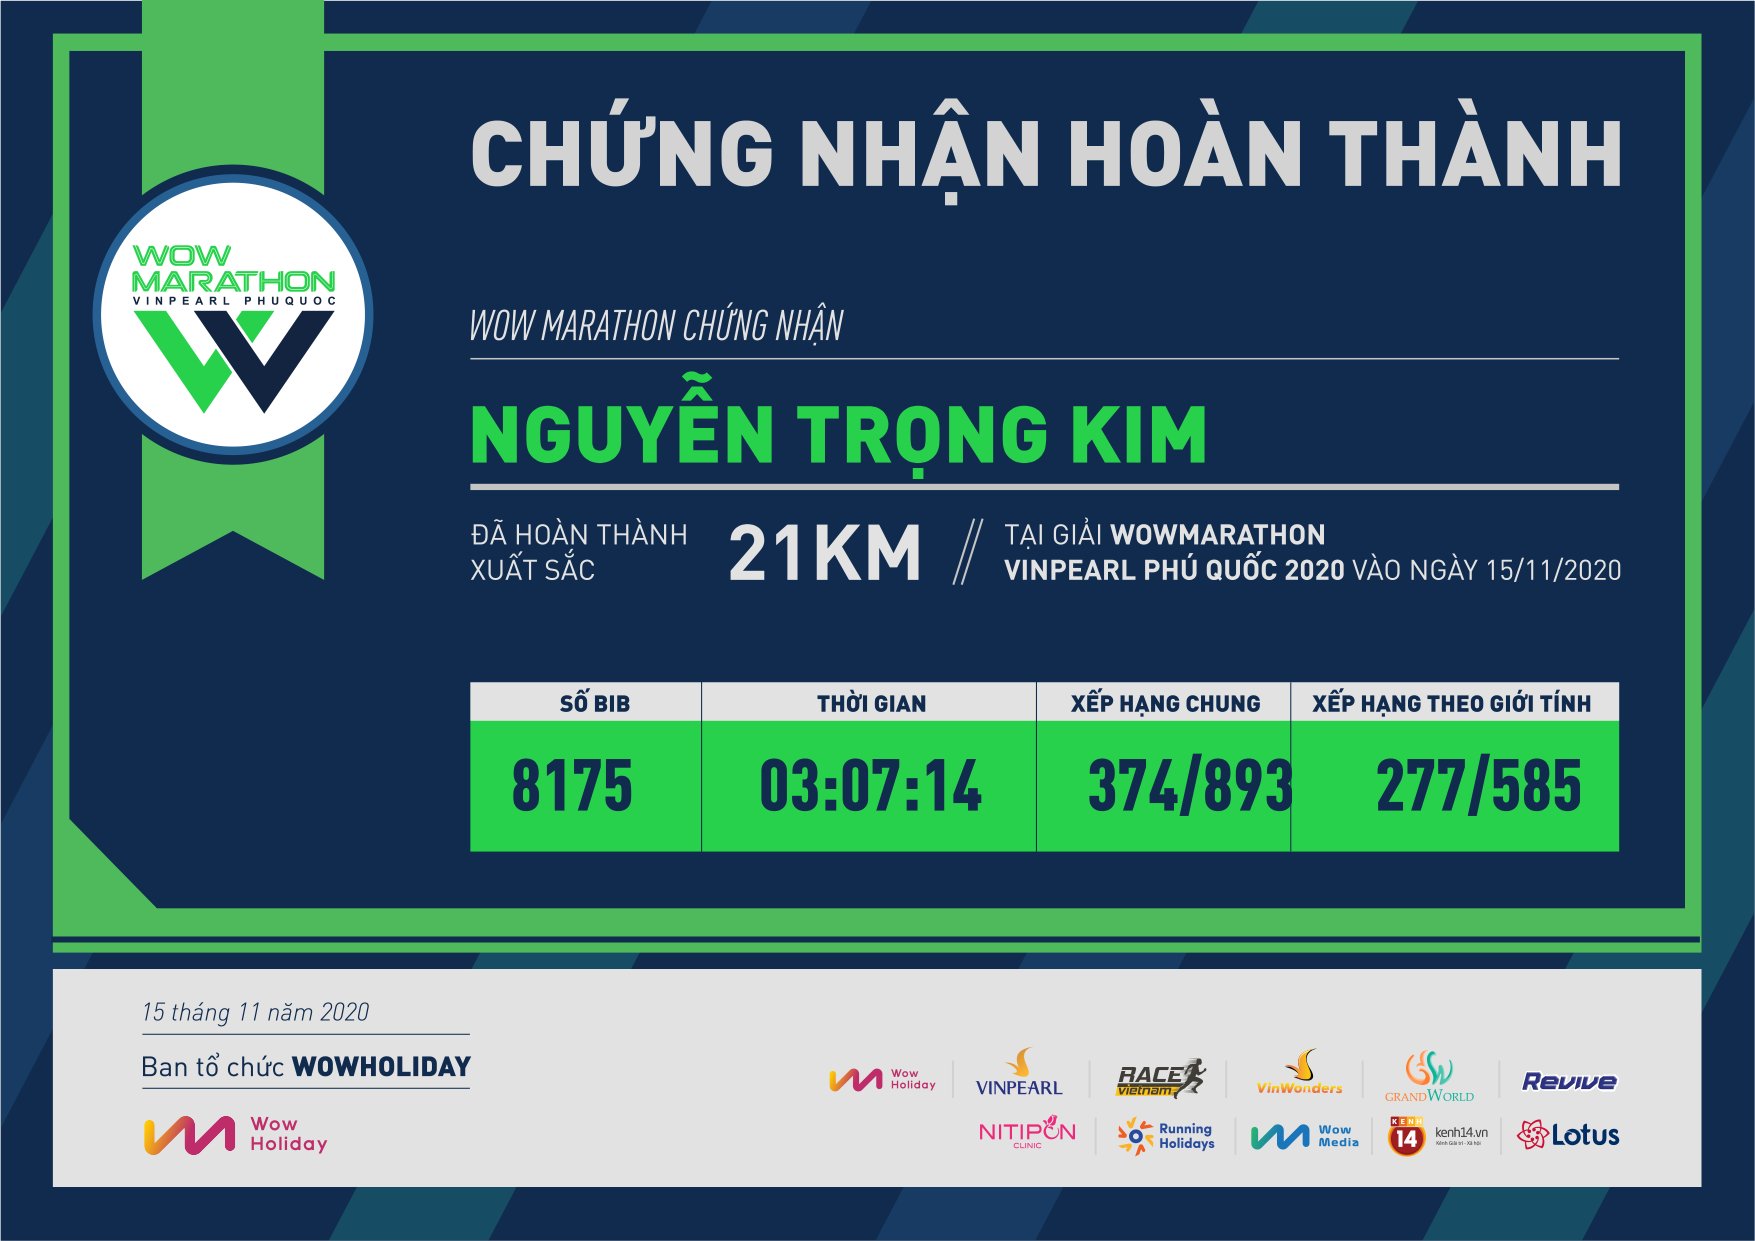 8175 - Nguyễn Trọng Kim